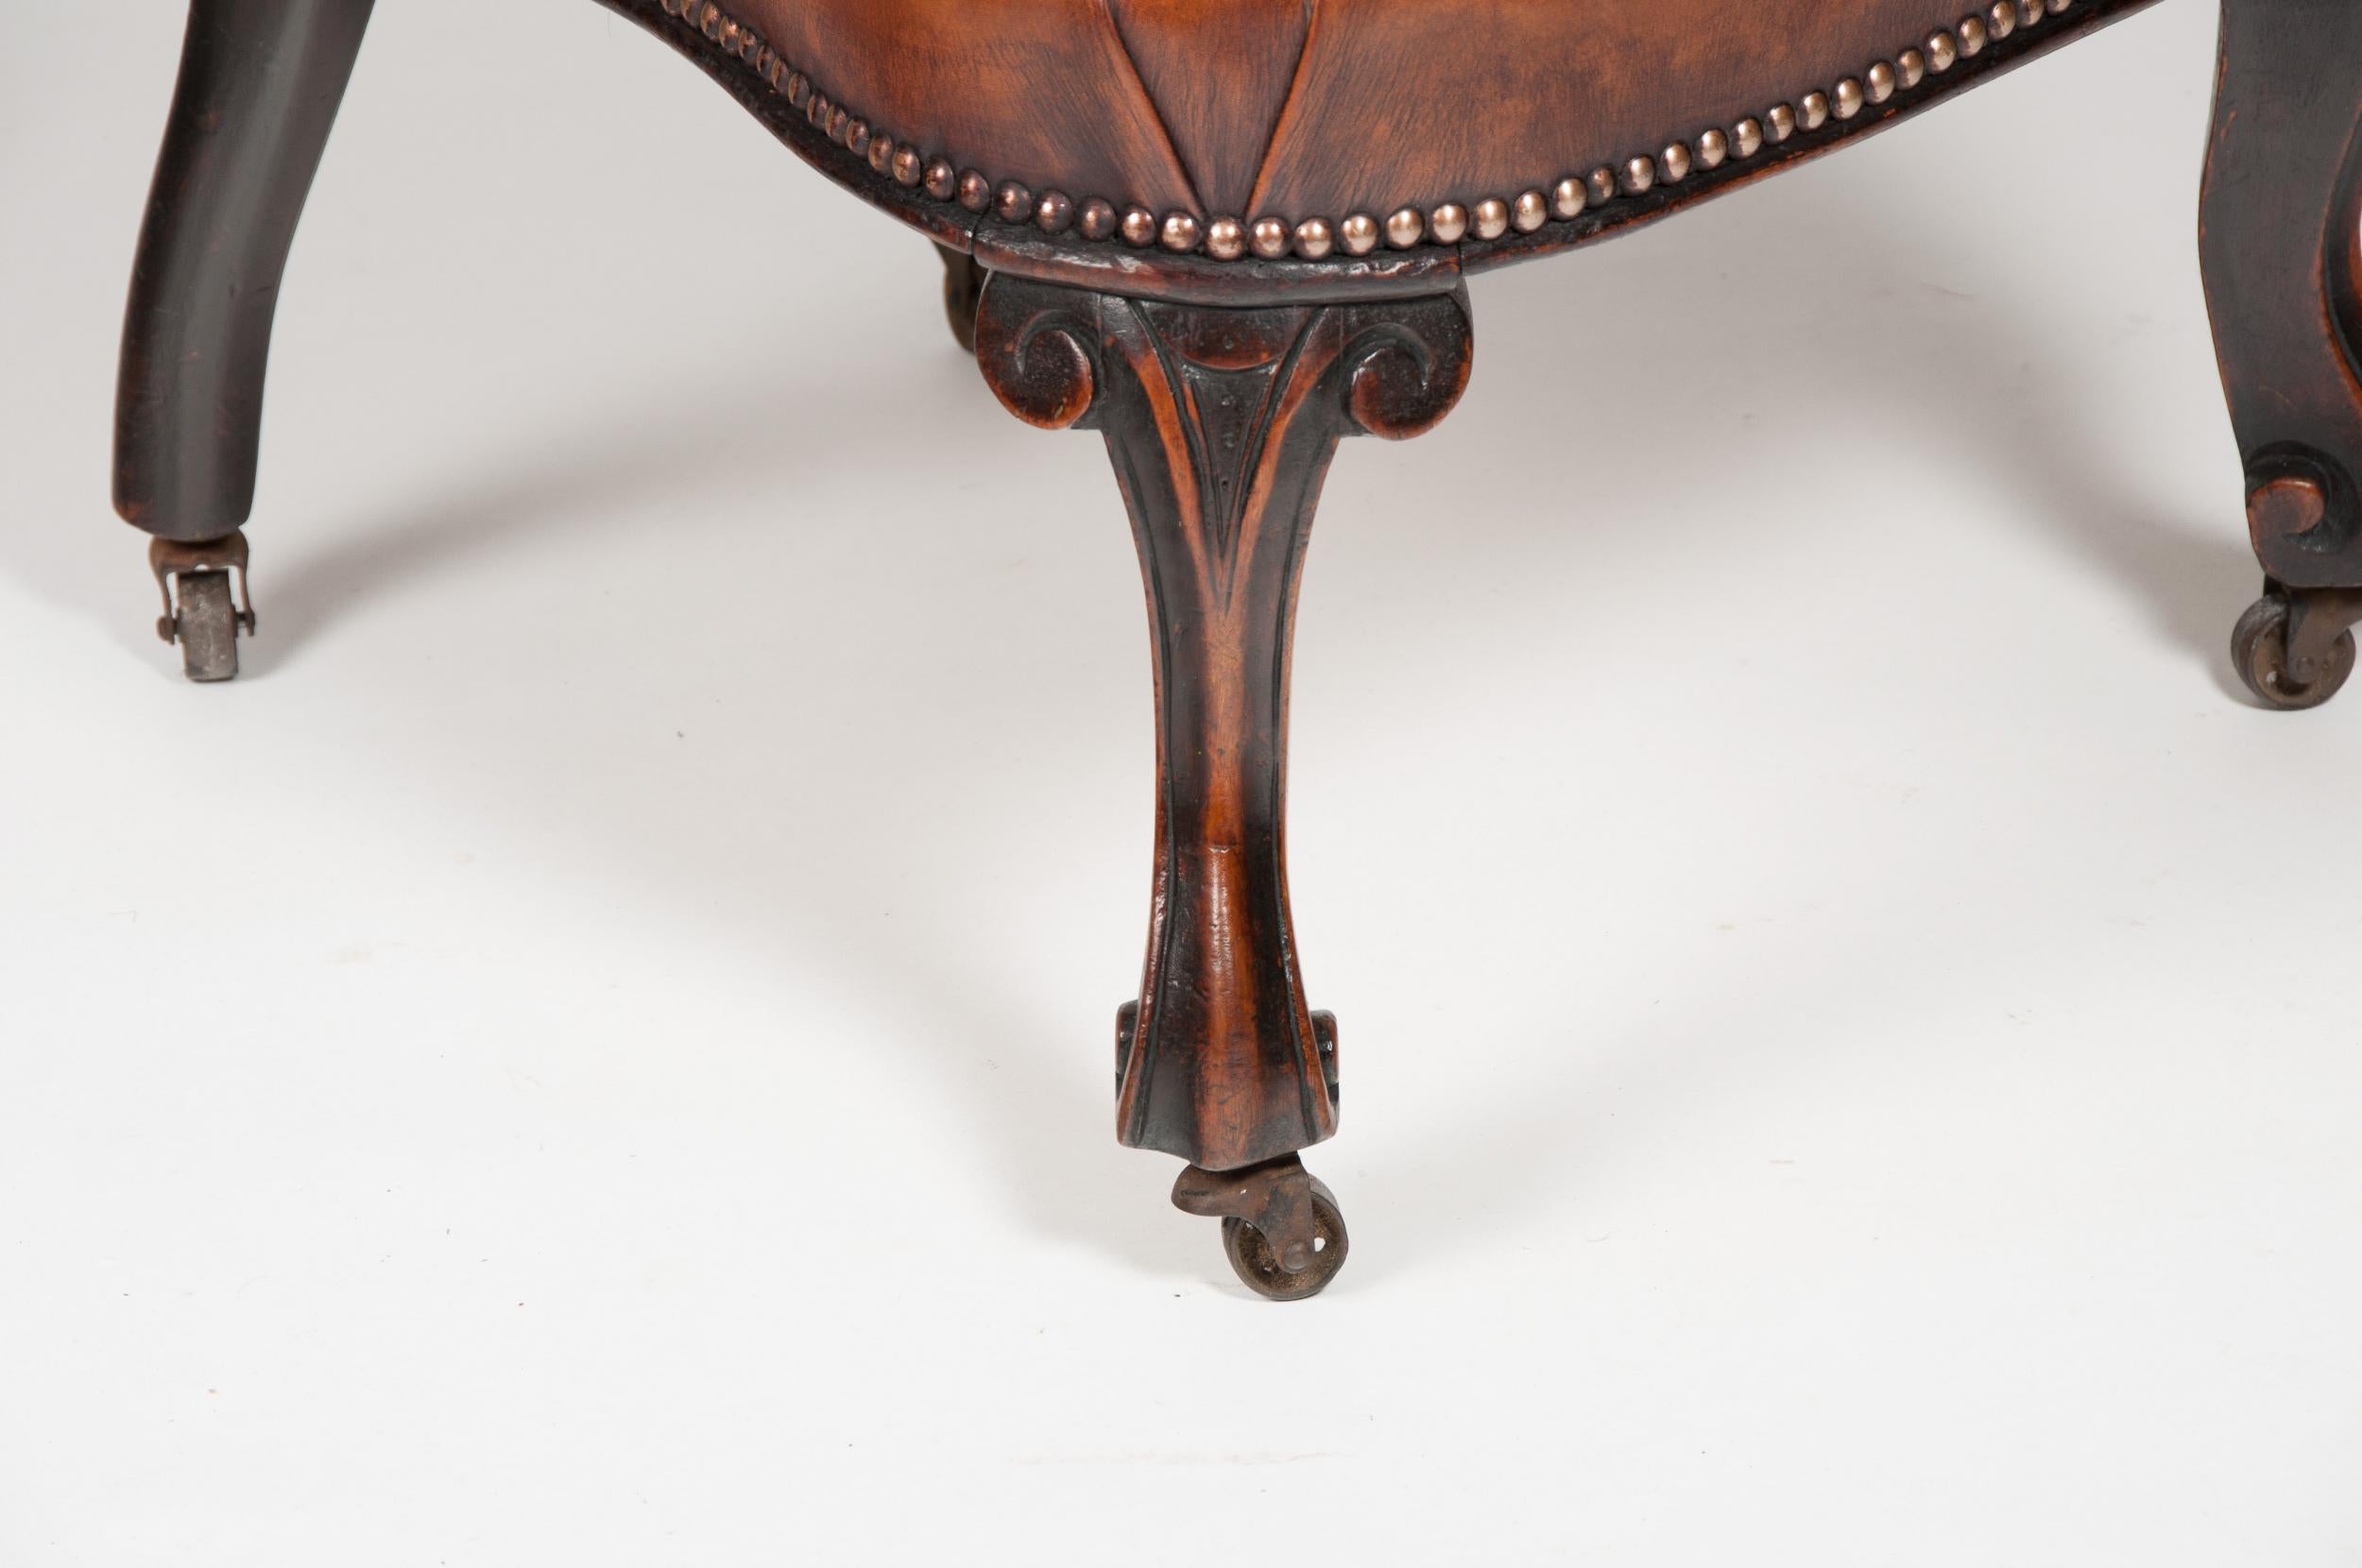 Une rare chaise d'enfant victorienne en acajou tapissée de cuir.

Anglais Circa 1880.

Cette rare chaise d'enfant a un dossier sculpté percé et façonné, avec un siège rembourré en cuir, soutenu par des pieds cabriole sculptés à l'avant et des